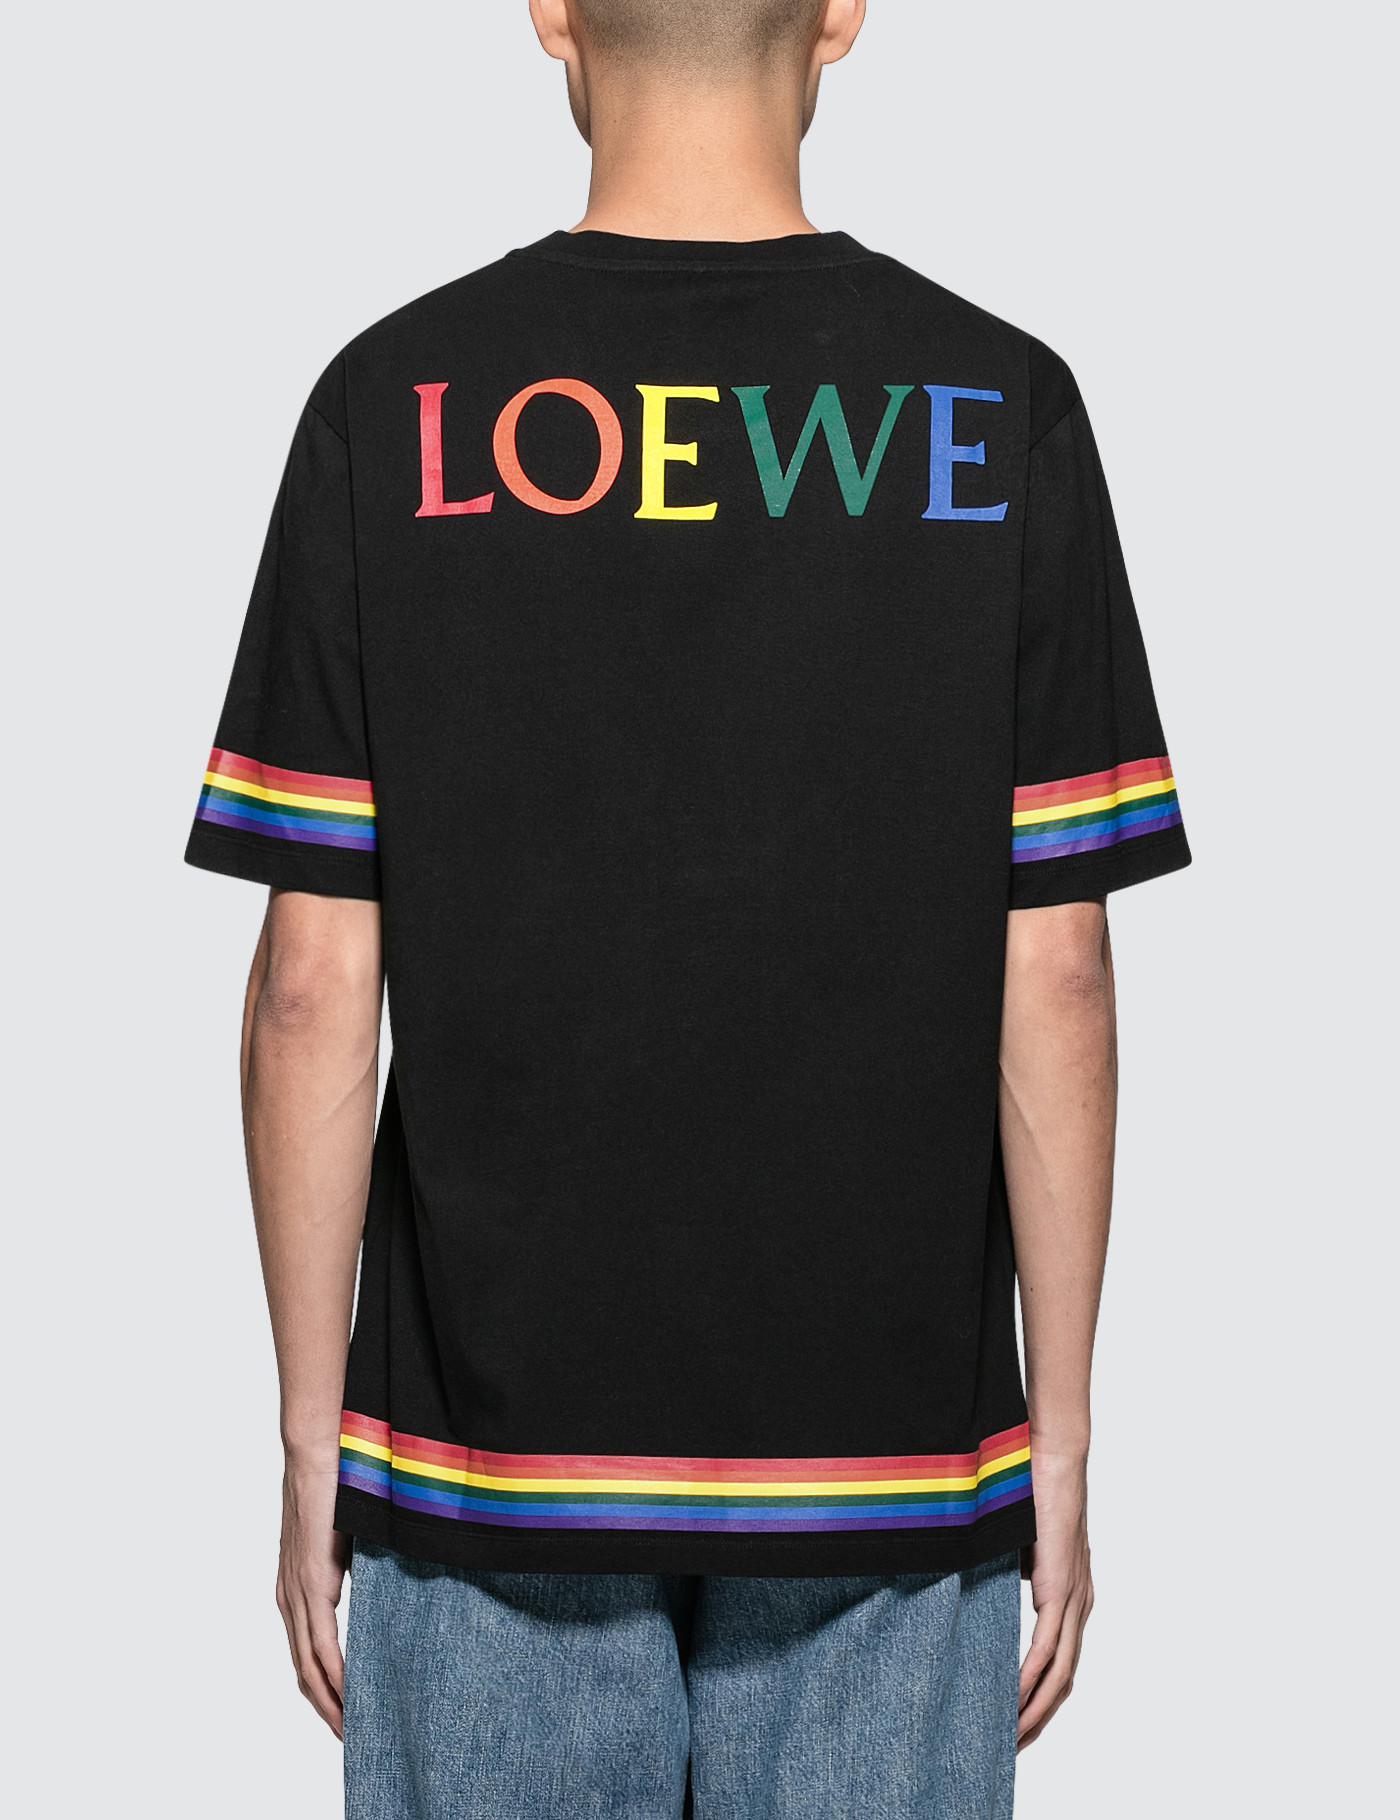 Loewe Cotton Rainbow S/s T-shirt in 